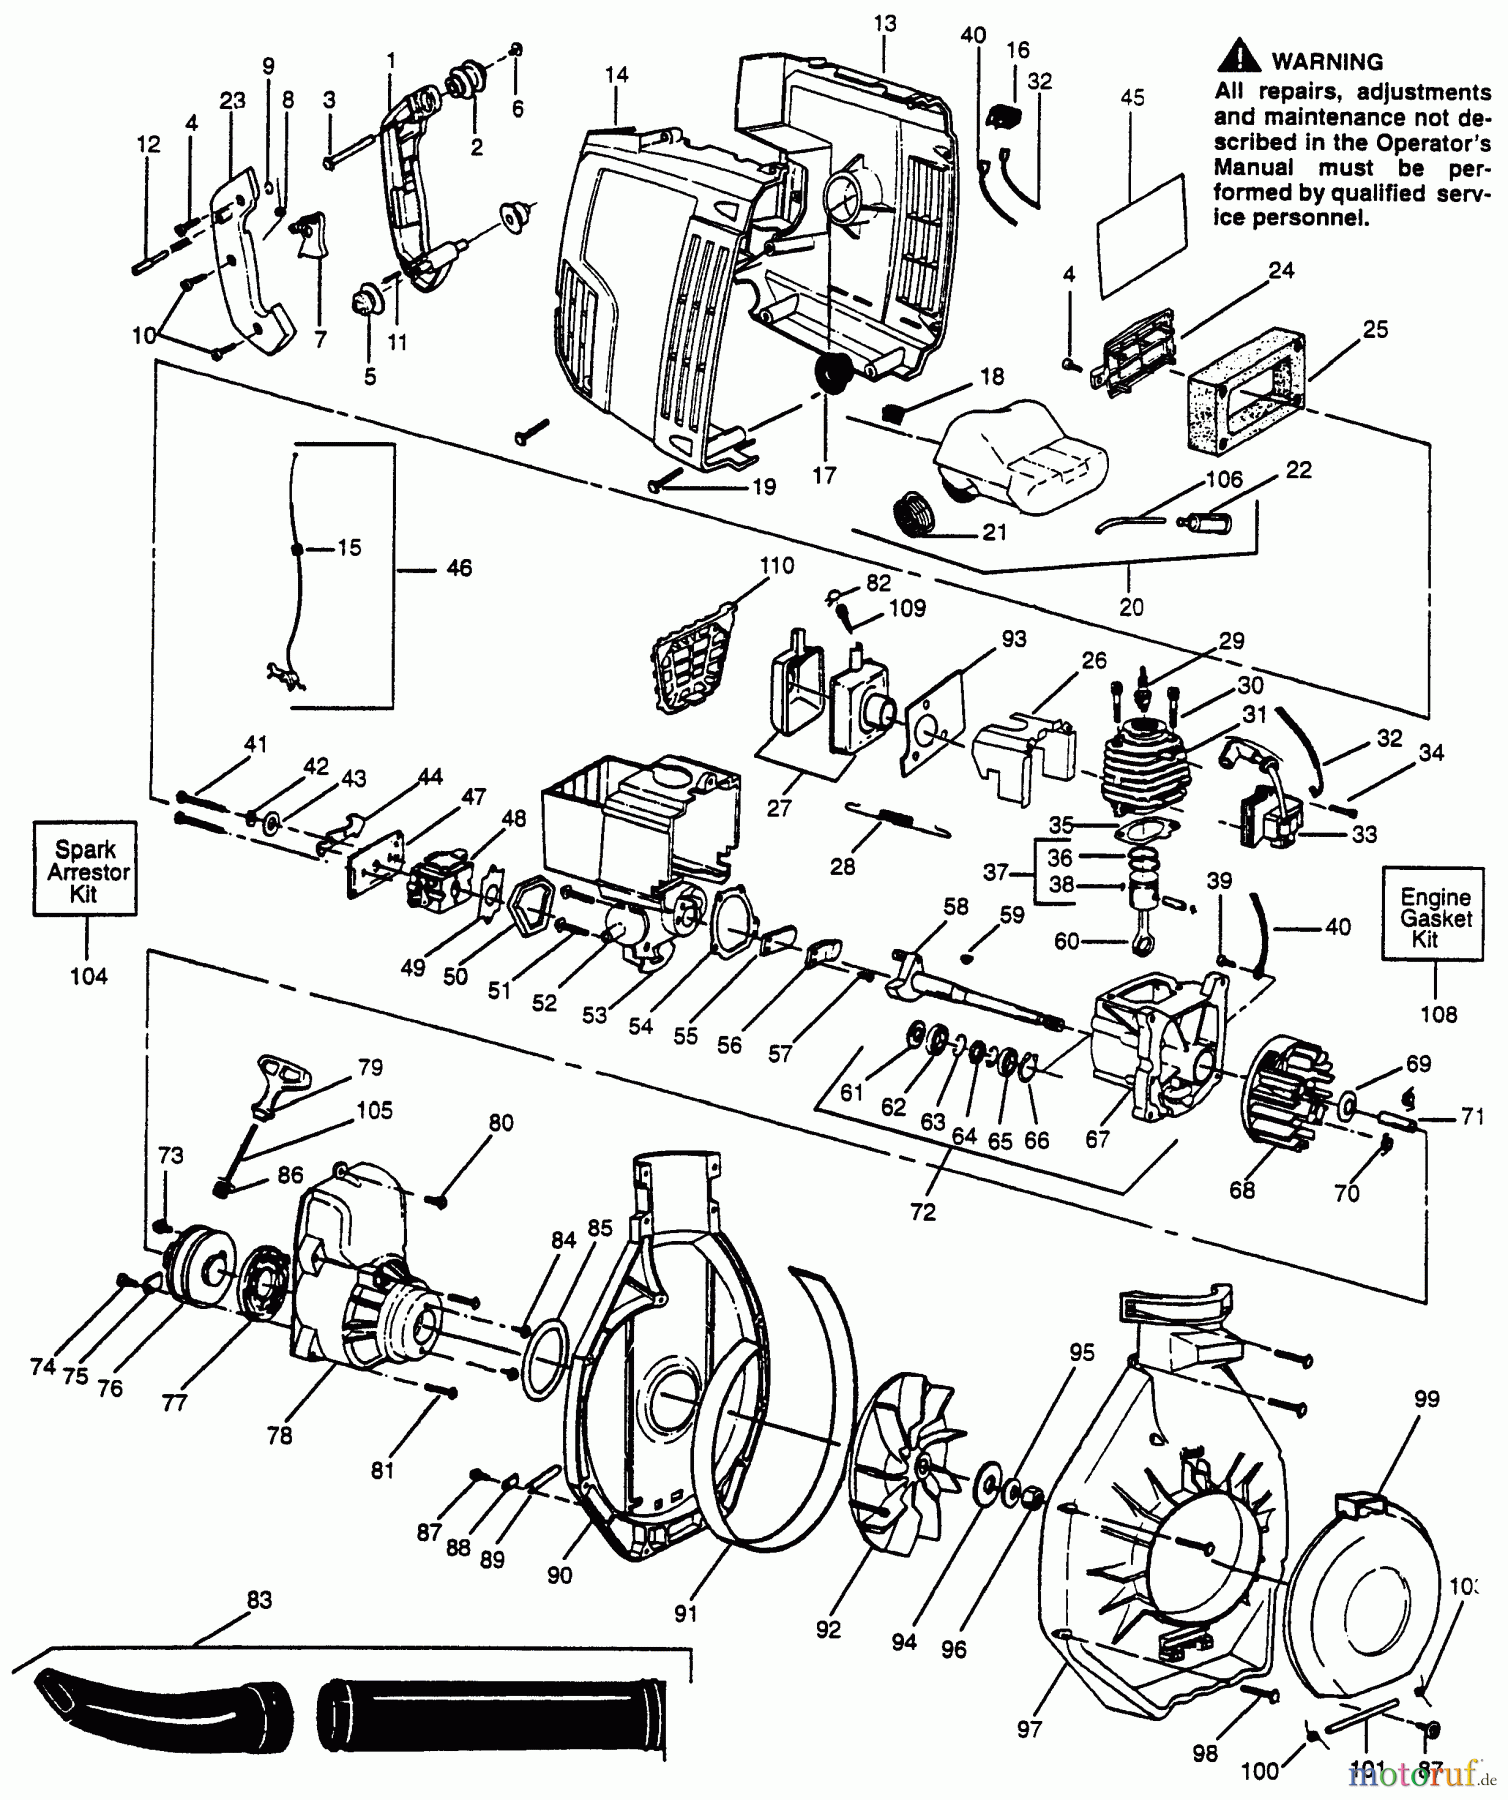  Husqvarna Bläser / Sauger / Häcksler / Mulchgeräte 132 HBV - Husqvarna Handheld Blower Vacuum (1996-01 & After) Main Assembly